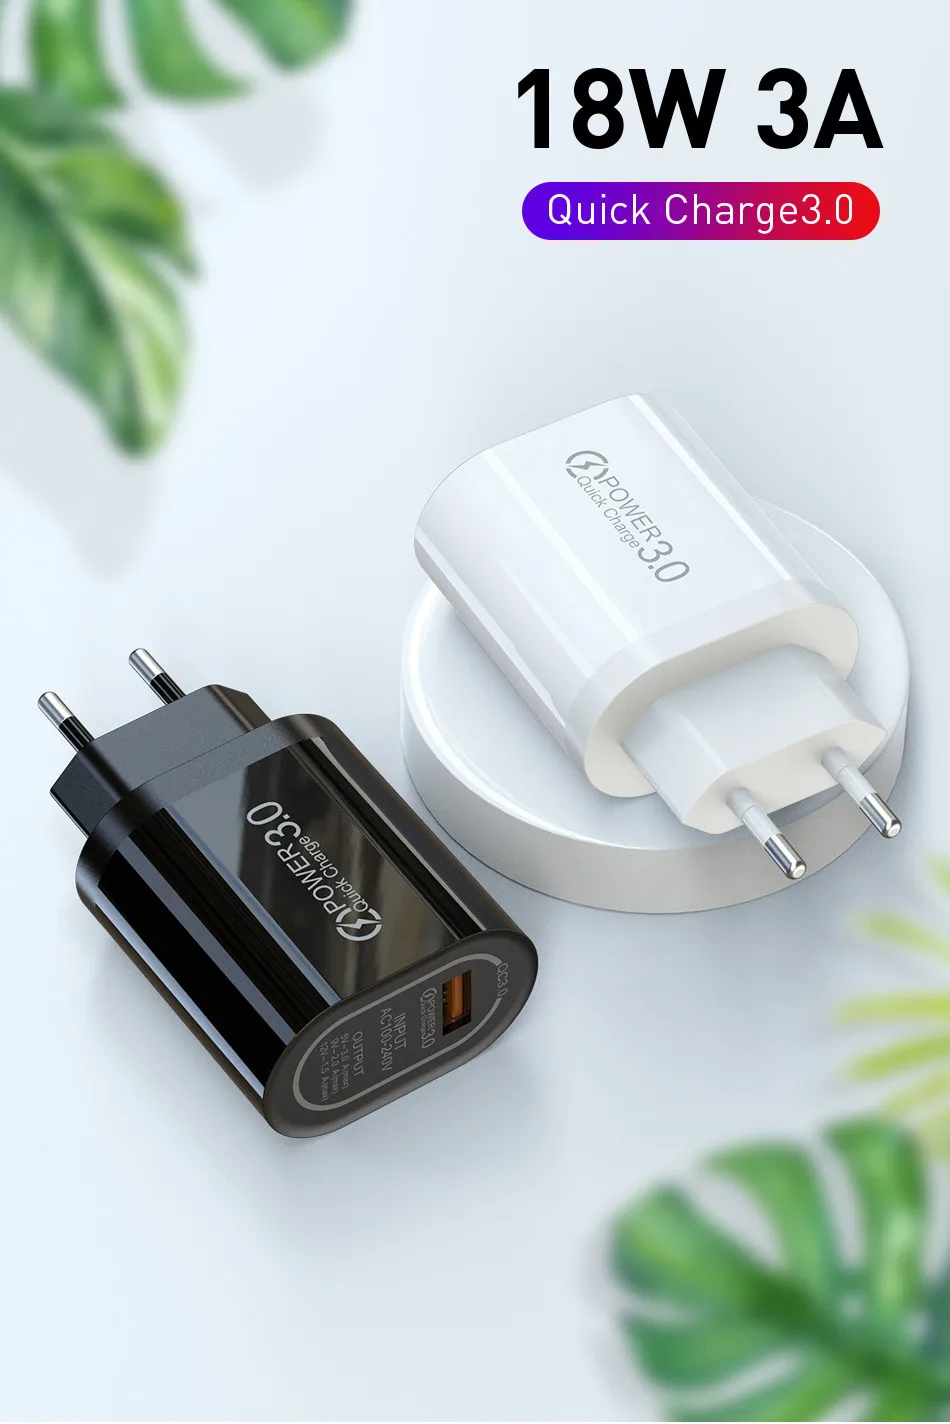 USLION 5 в 3 А Быстрая зарядка 3,0 USB зарядное устройство для iPhone X MAX QC3.0 EU настенное зарядное устройство для телефона Быстрая Зарядка адаптер для samsung Xiaomi